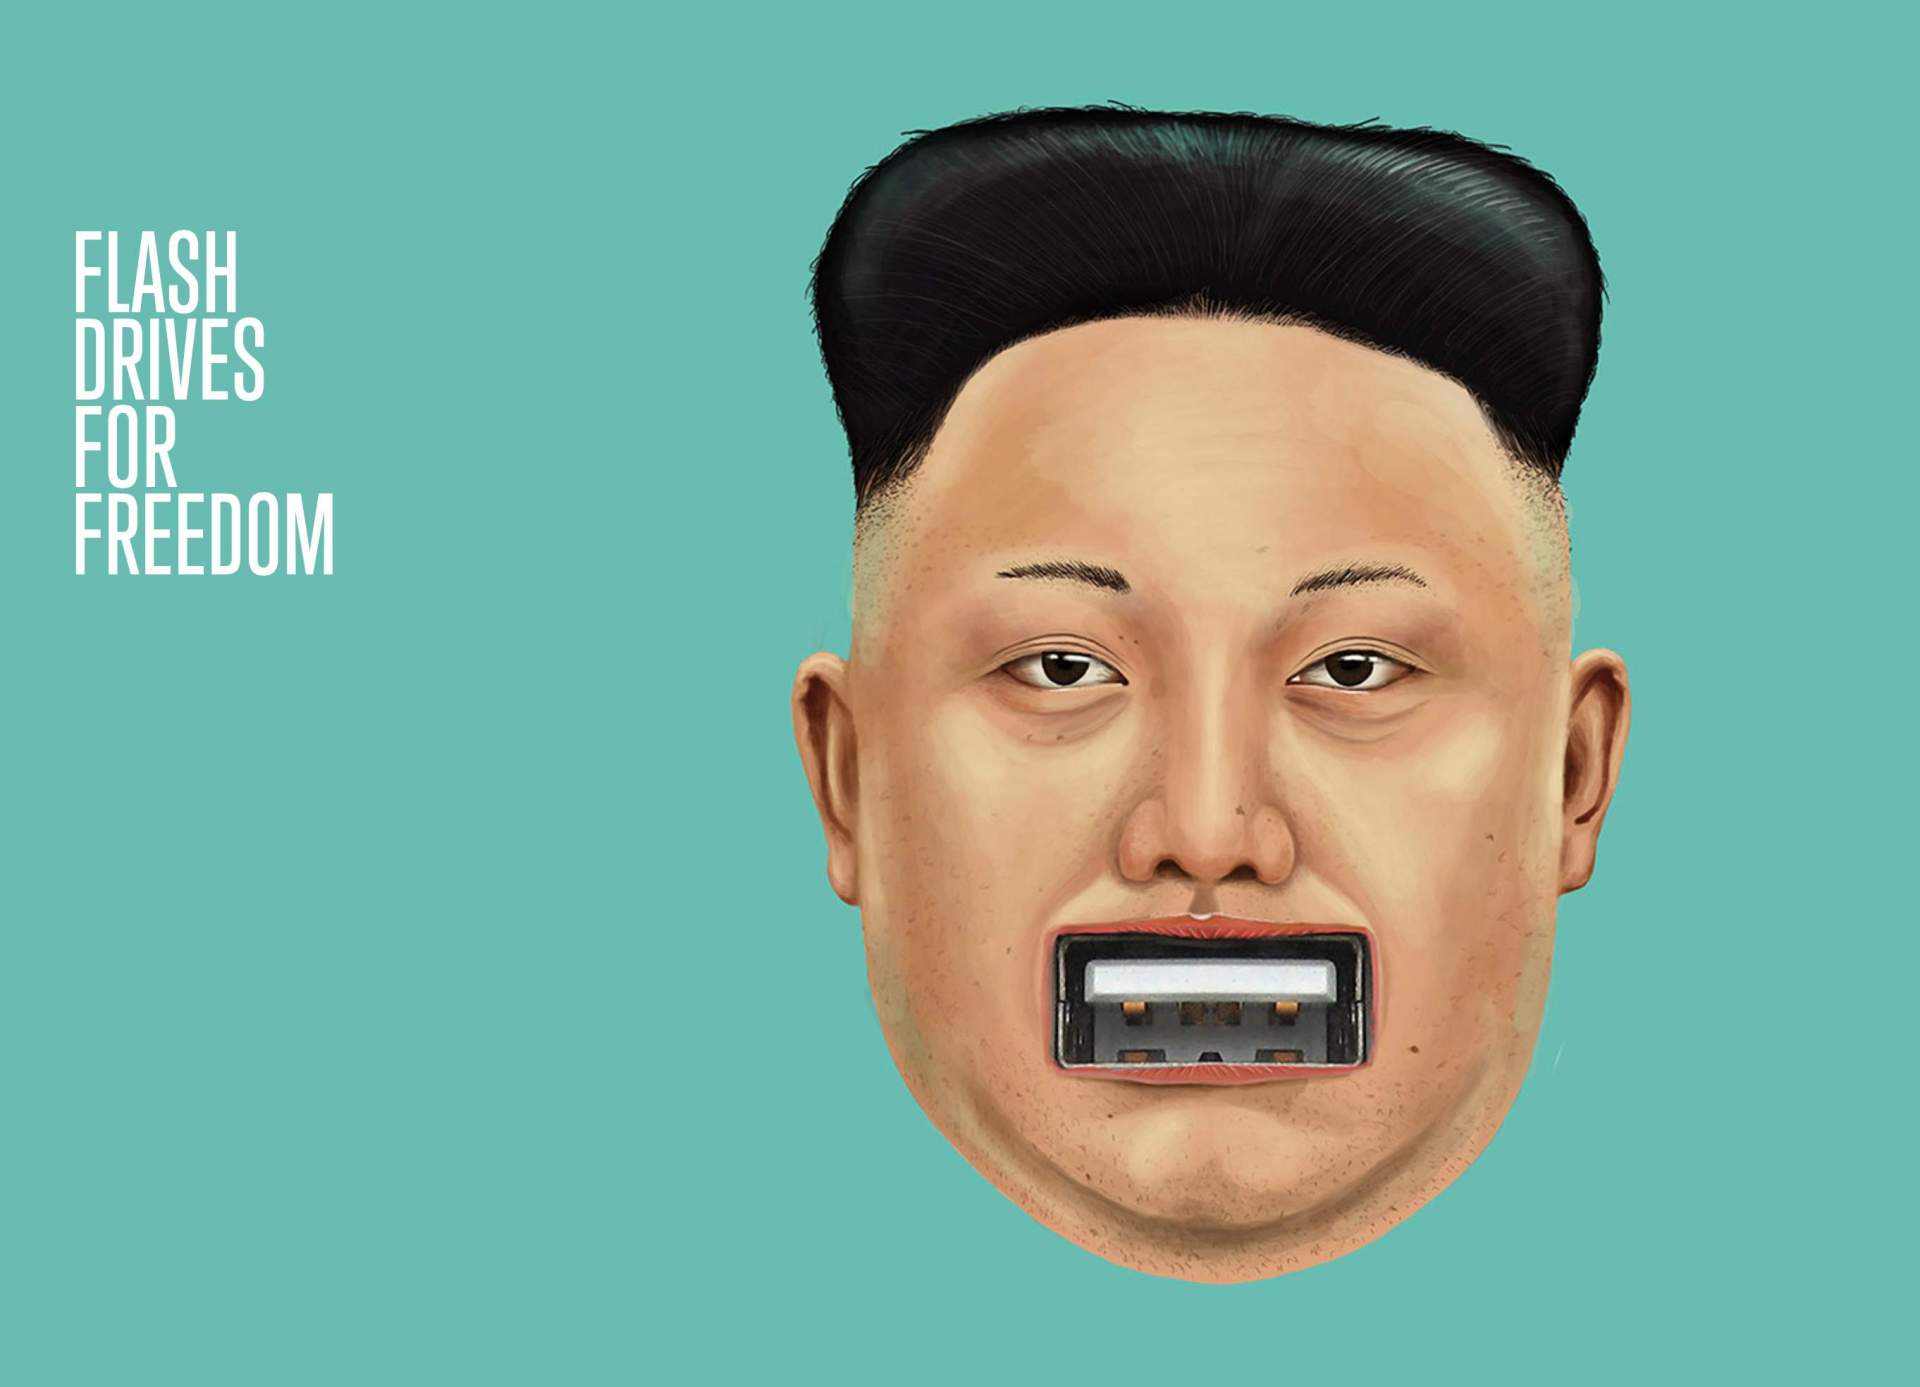 Eure USB-Sticks können helfen, Nordkorea zu befreien.